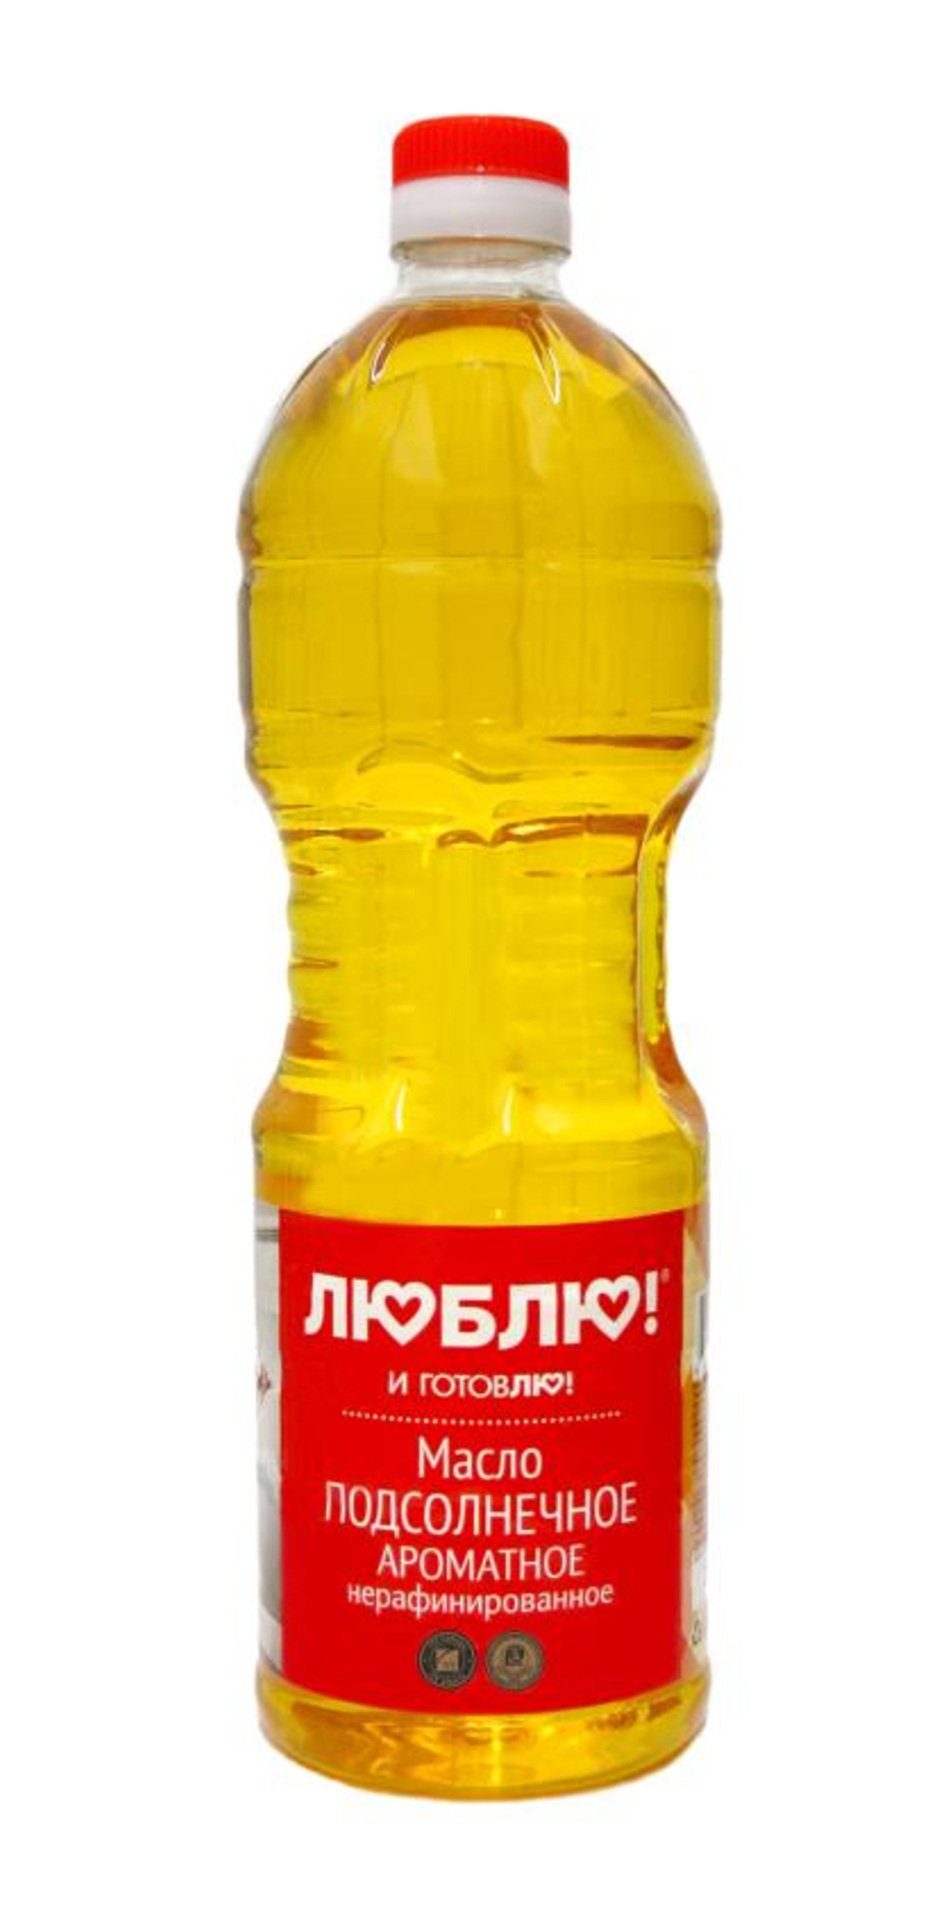  подсолнечное нерафинированное ароматное 1 литр ООО 